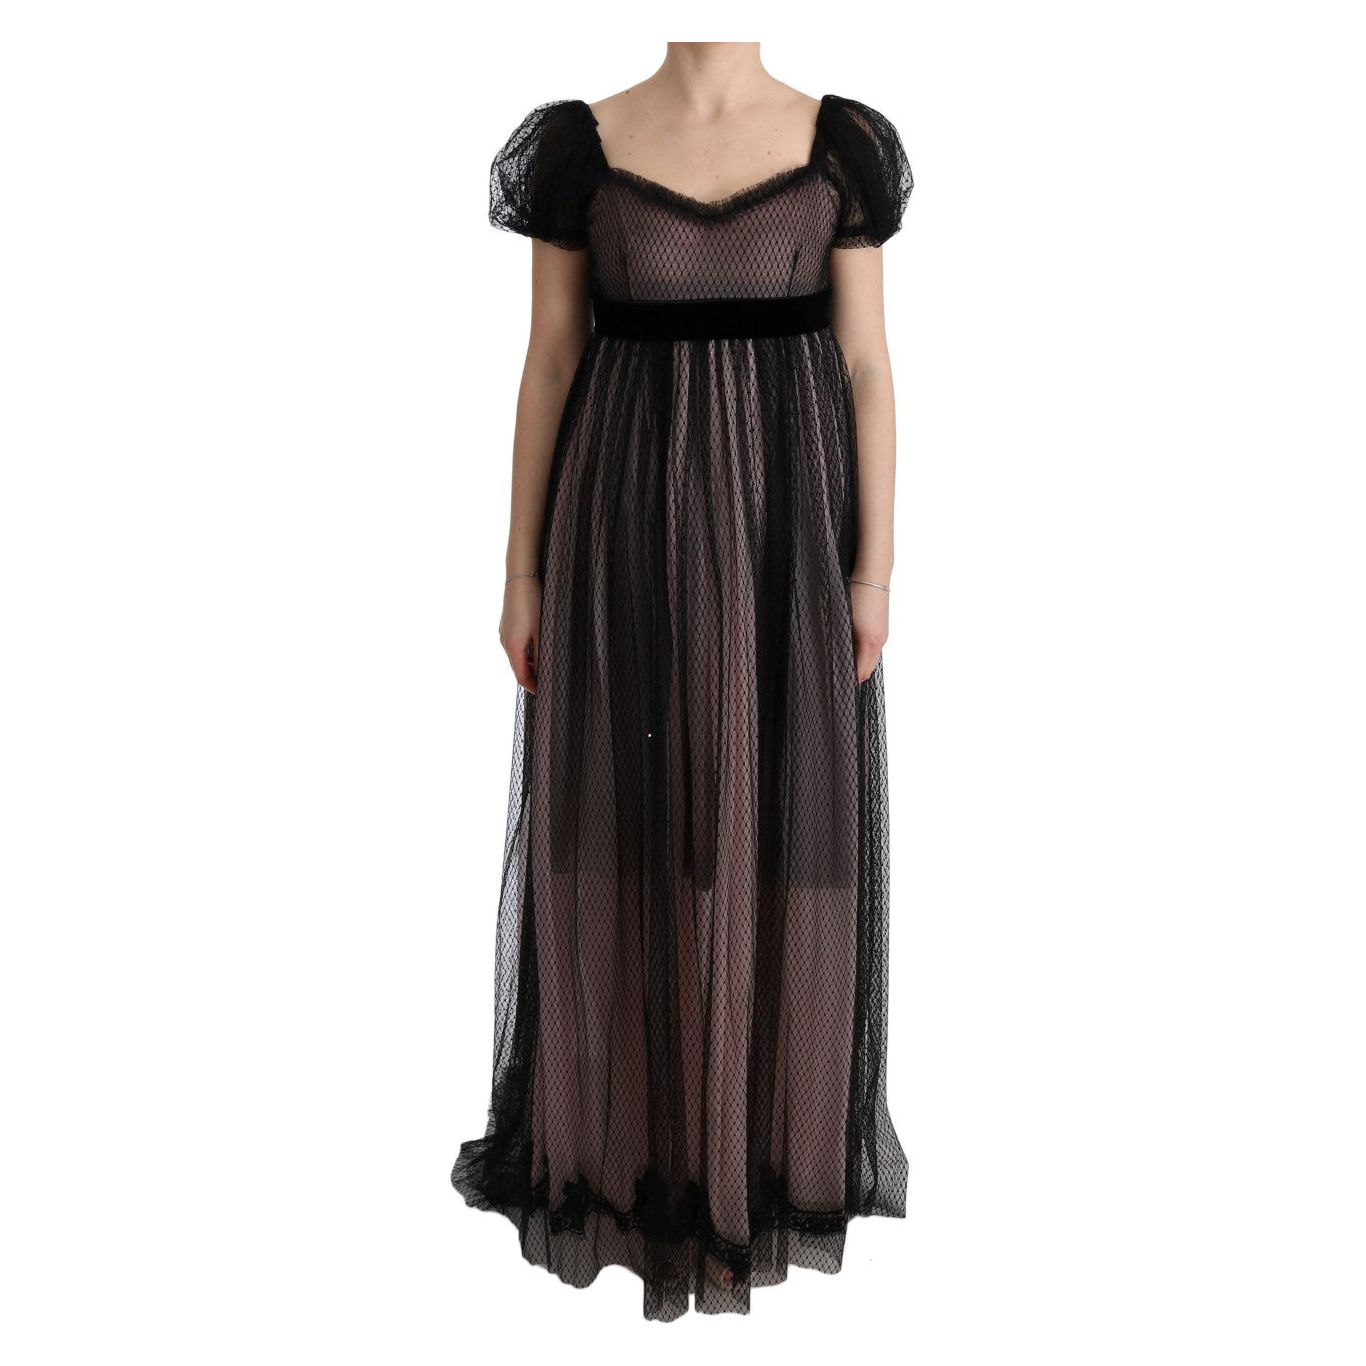 Dolce & Gabbana Elegant Full Length Shift Dress black-pink-silk-long-shift-dress 445560-black-pink-silk-long-shift-dress.jpg